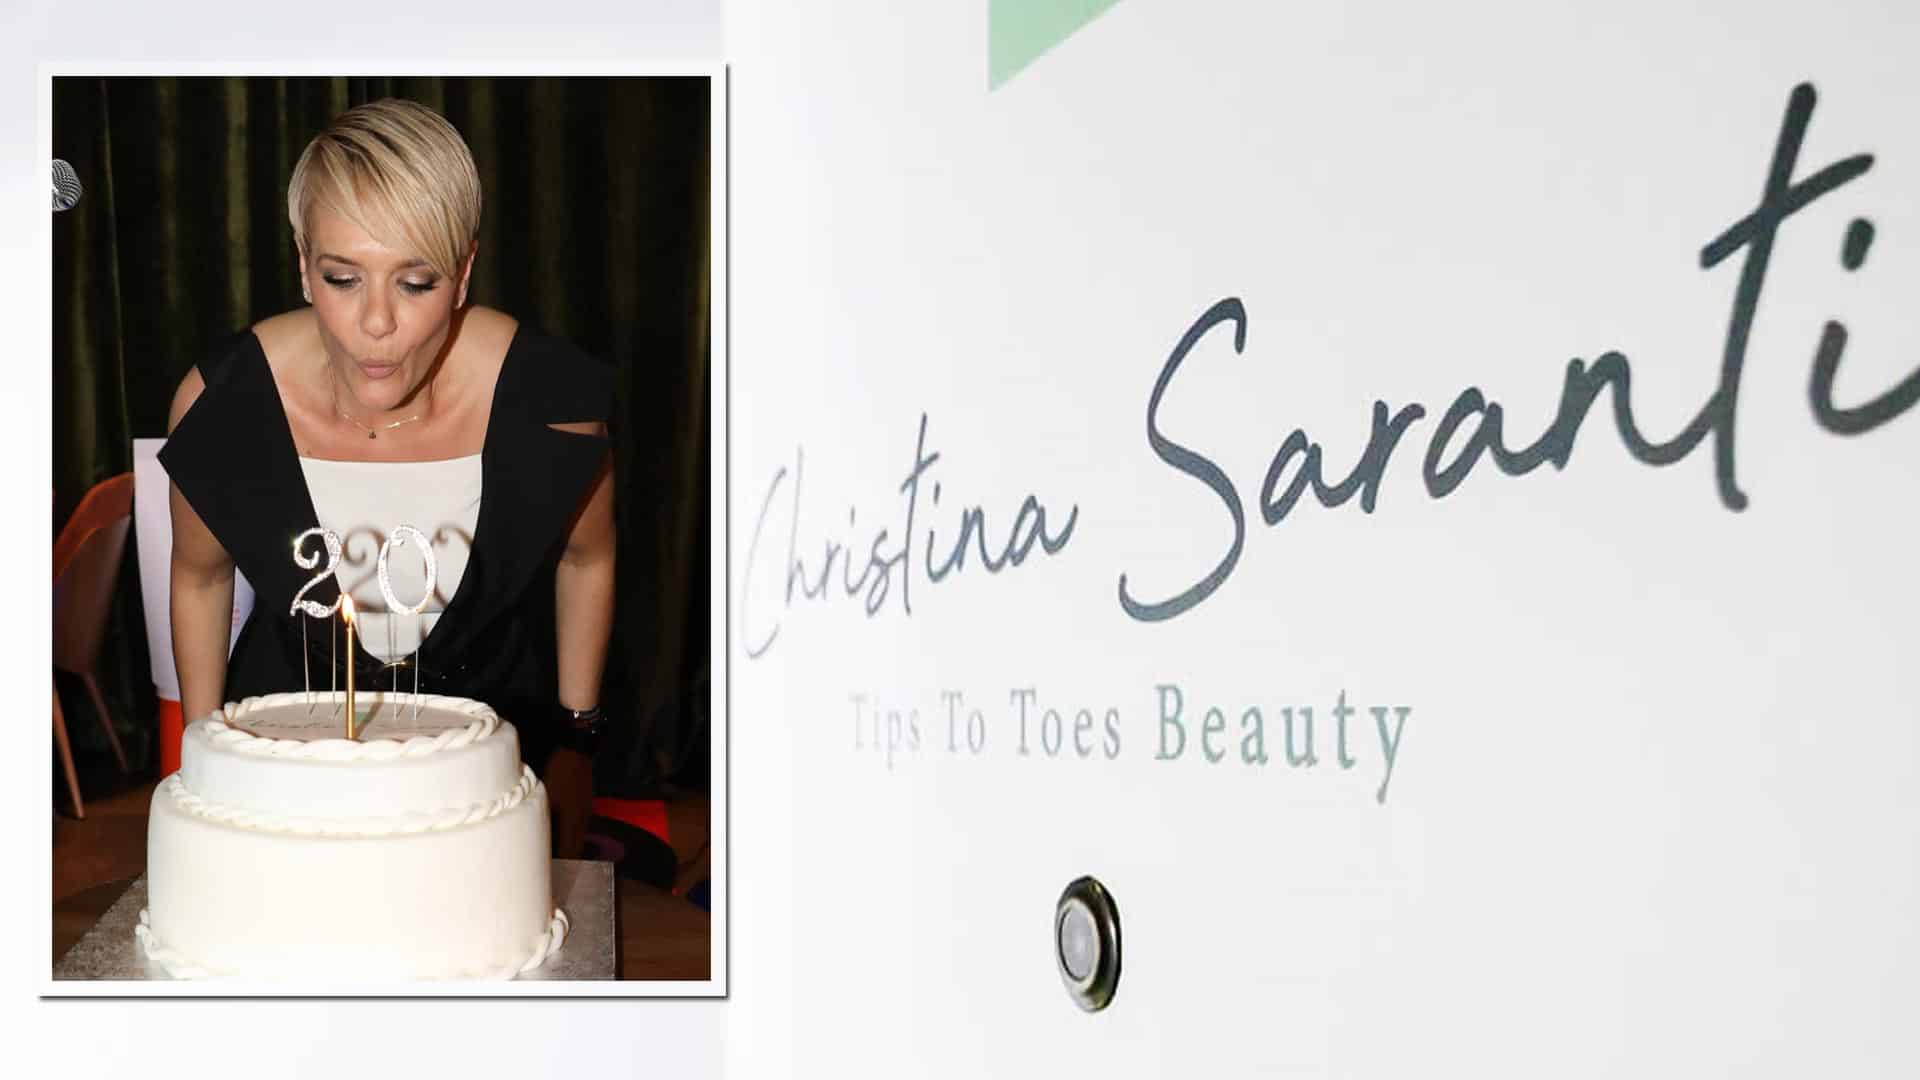 Χριστίνα Σαράντη: Γιόρτασε τα 20 χρόνια λειτουργίας του ινστιτούτου αισθητικής της «Tips to Toes»